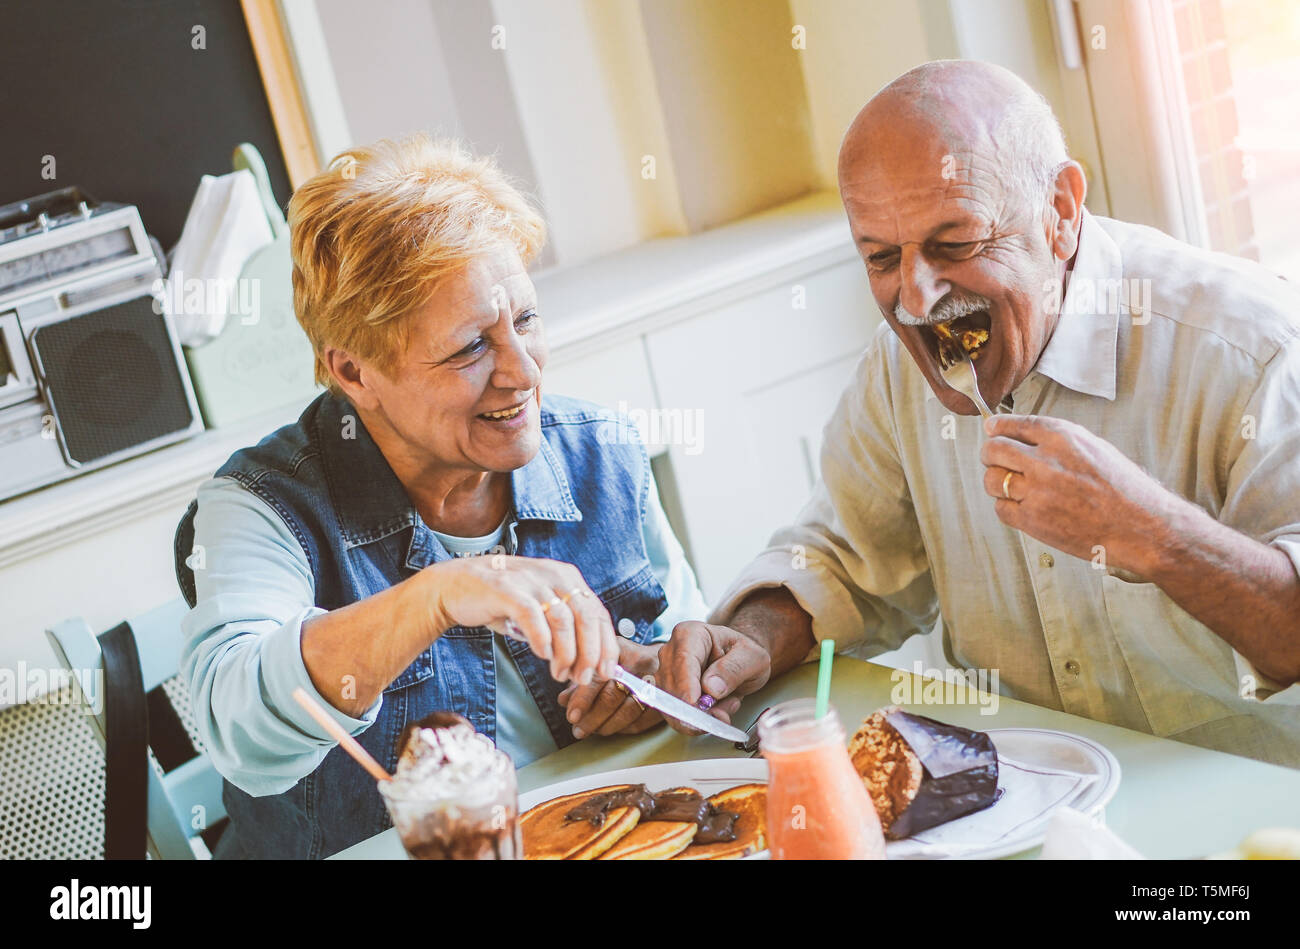 Happy Senioren Paar essen Pfannkuchen in einer Bar Restaurant - reife Menschen Spaß zusammen speisen zu Hause - Begriff der älteren Lifestyle Momente Stockfoto